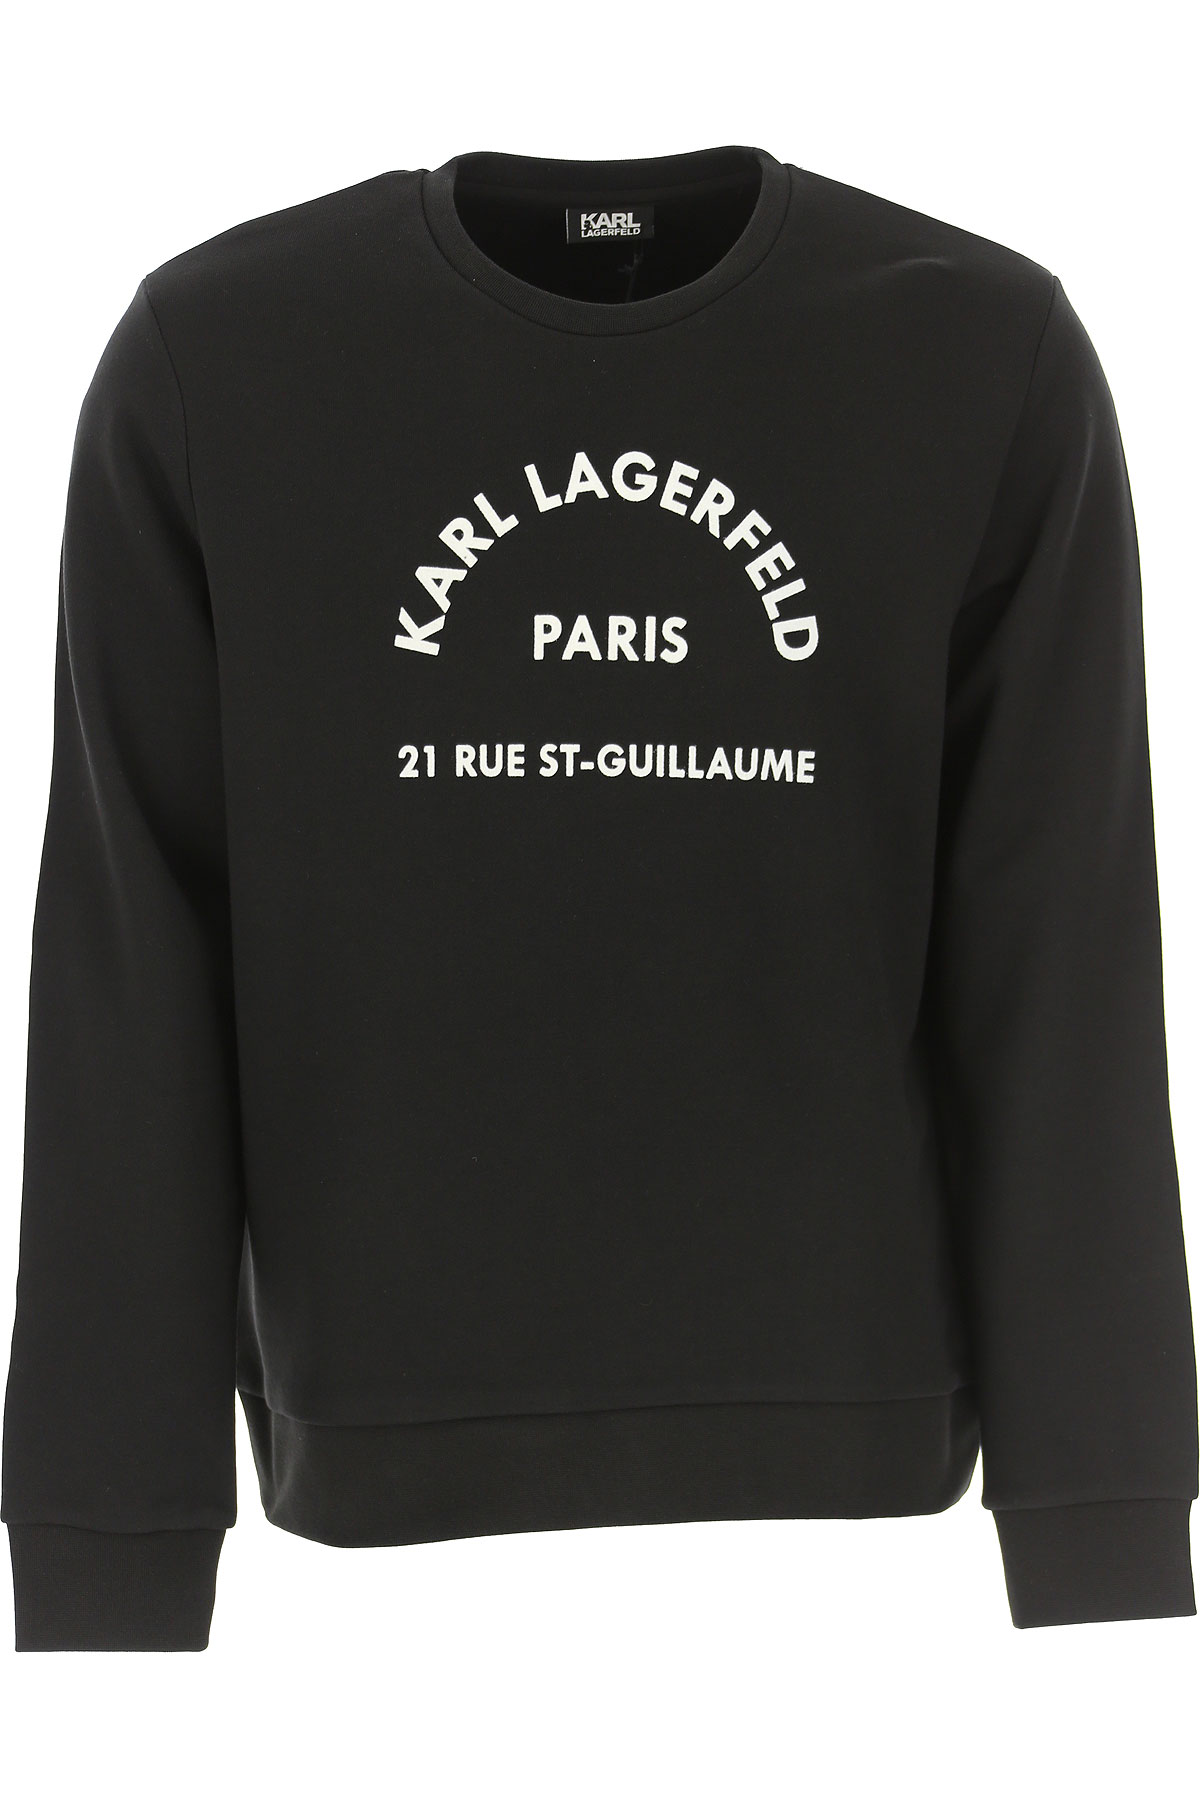 Karl Lagerfeld Sweatshirt für Herren, Kapuzenpulli, Hoodie, Sweats Günstig im Sale, Schwarz, Baumwolle, 2017, L S